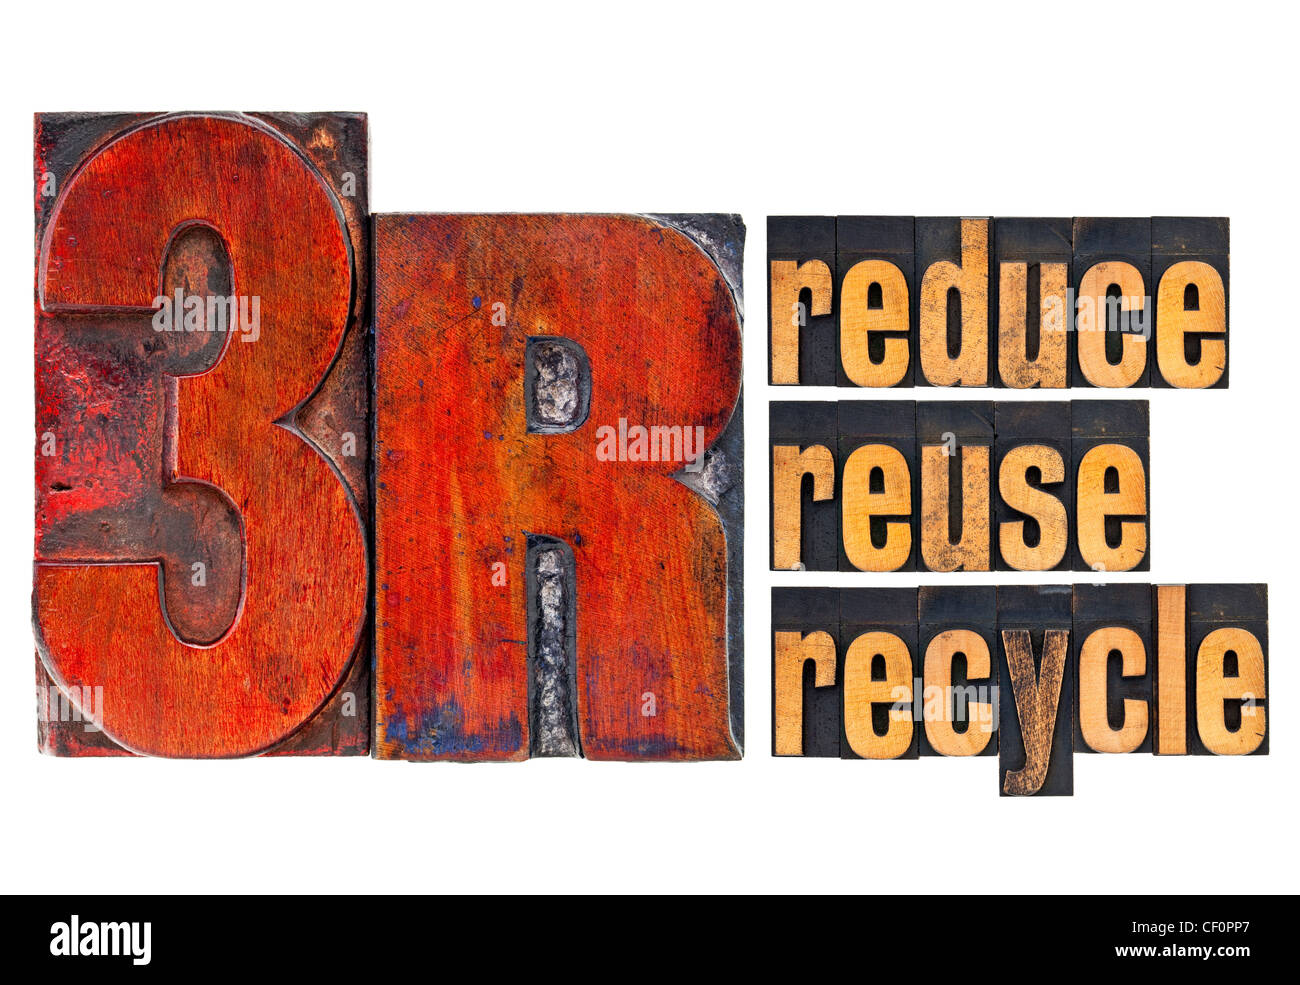 Ridurre, riutilizzare e riciclare - 3R concetto - un collage di parole isolate in rilievografia vintage tipo legno Foto Stock